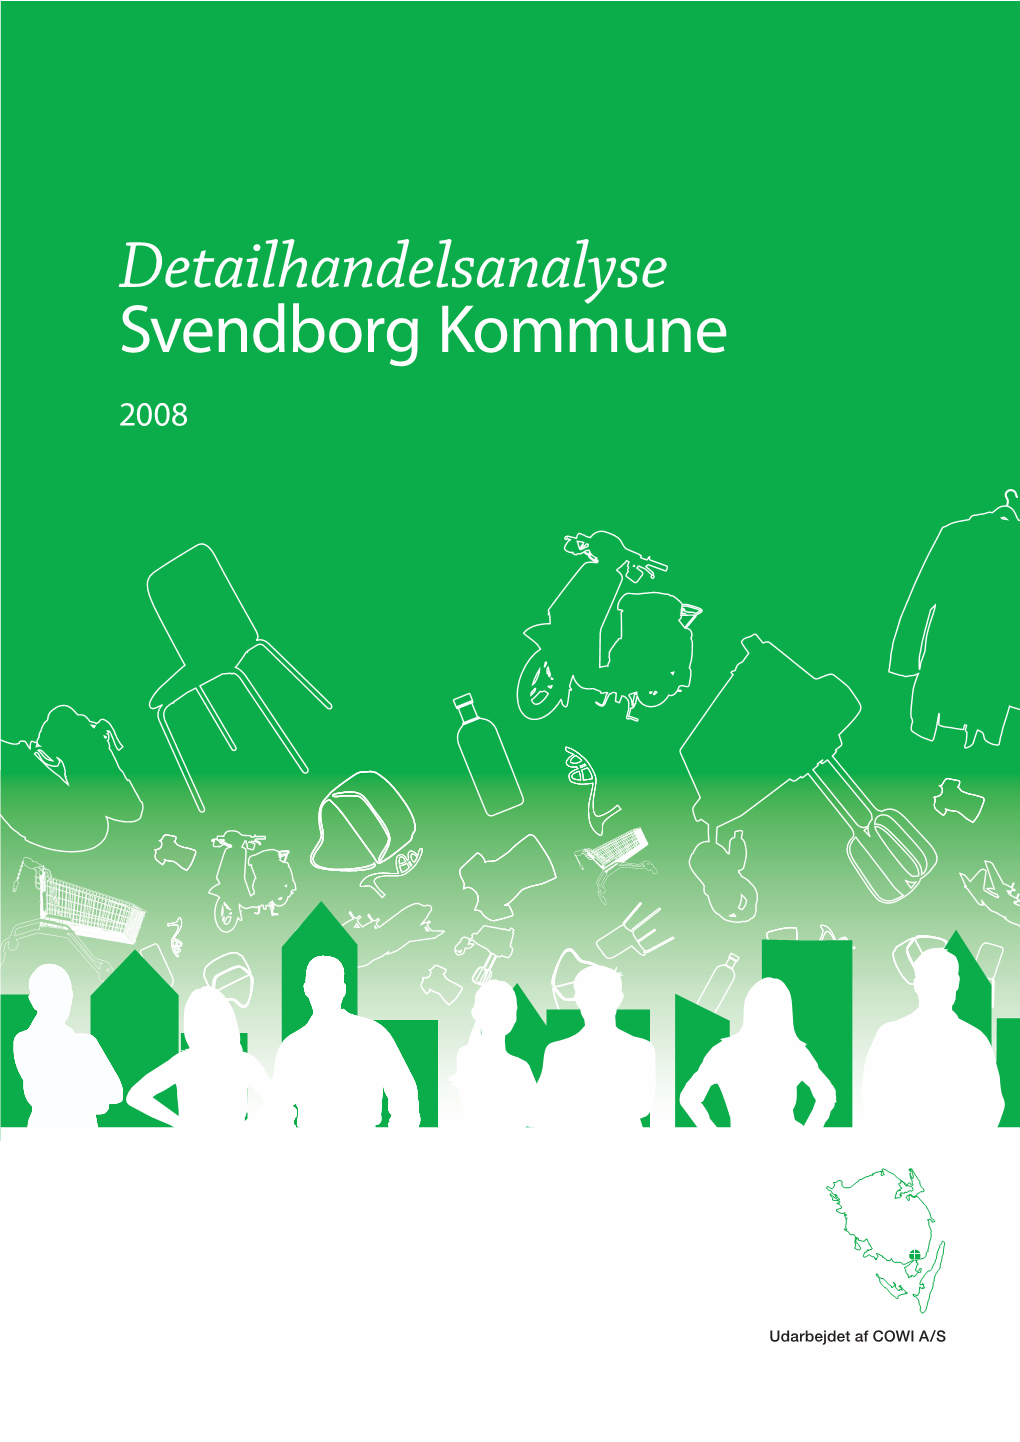 Detailhandelsanalyse for Svendborg Kommune 2008